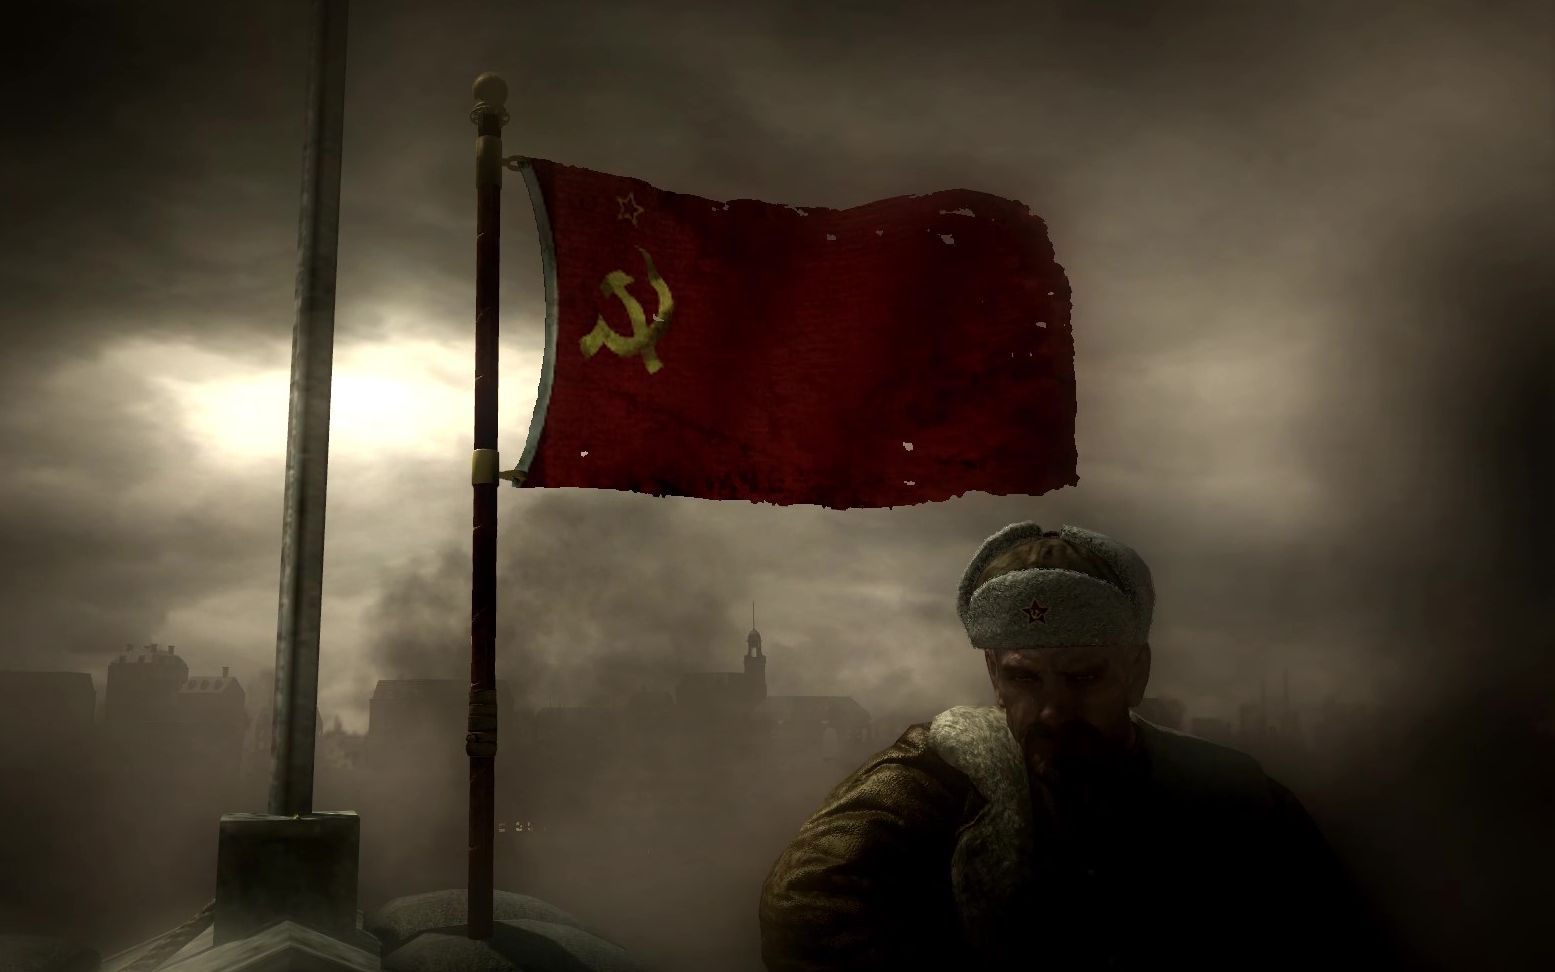 活动作品乌拉苏联国旗插在国会大厦cod5最后一幕